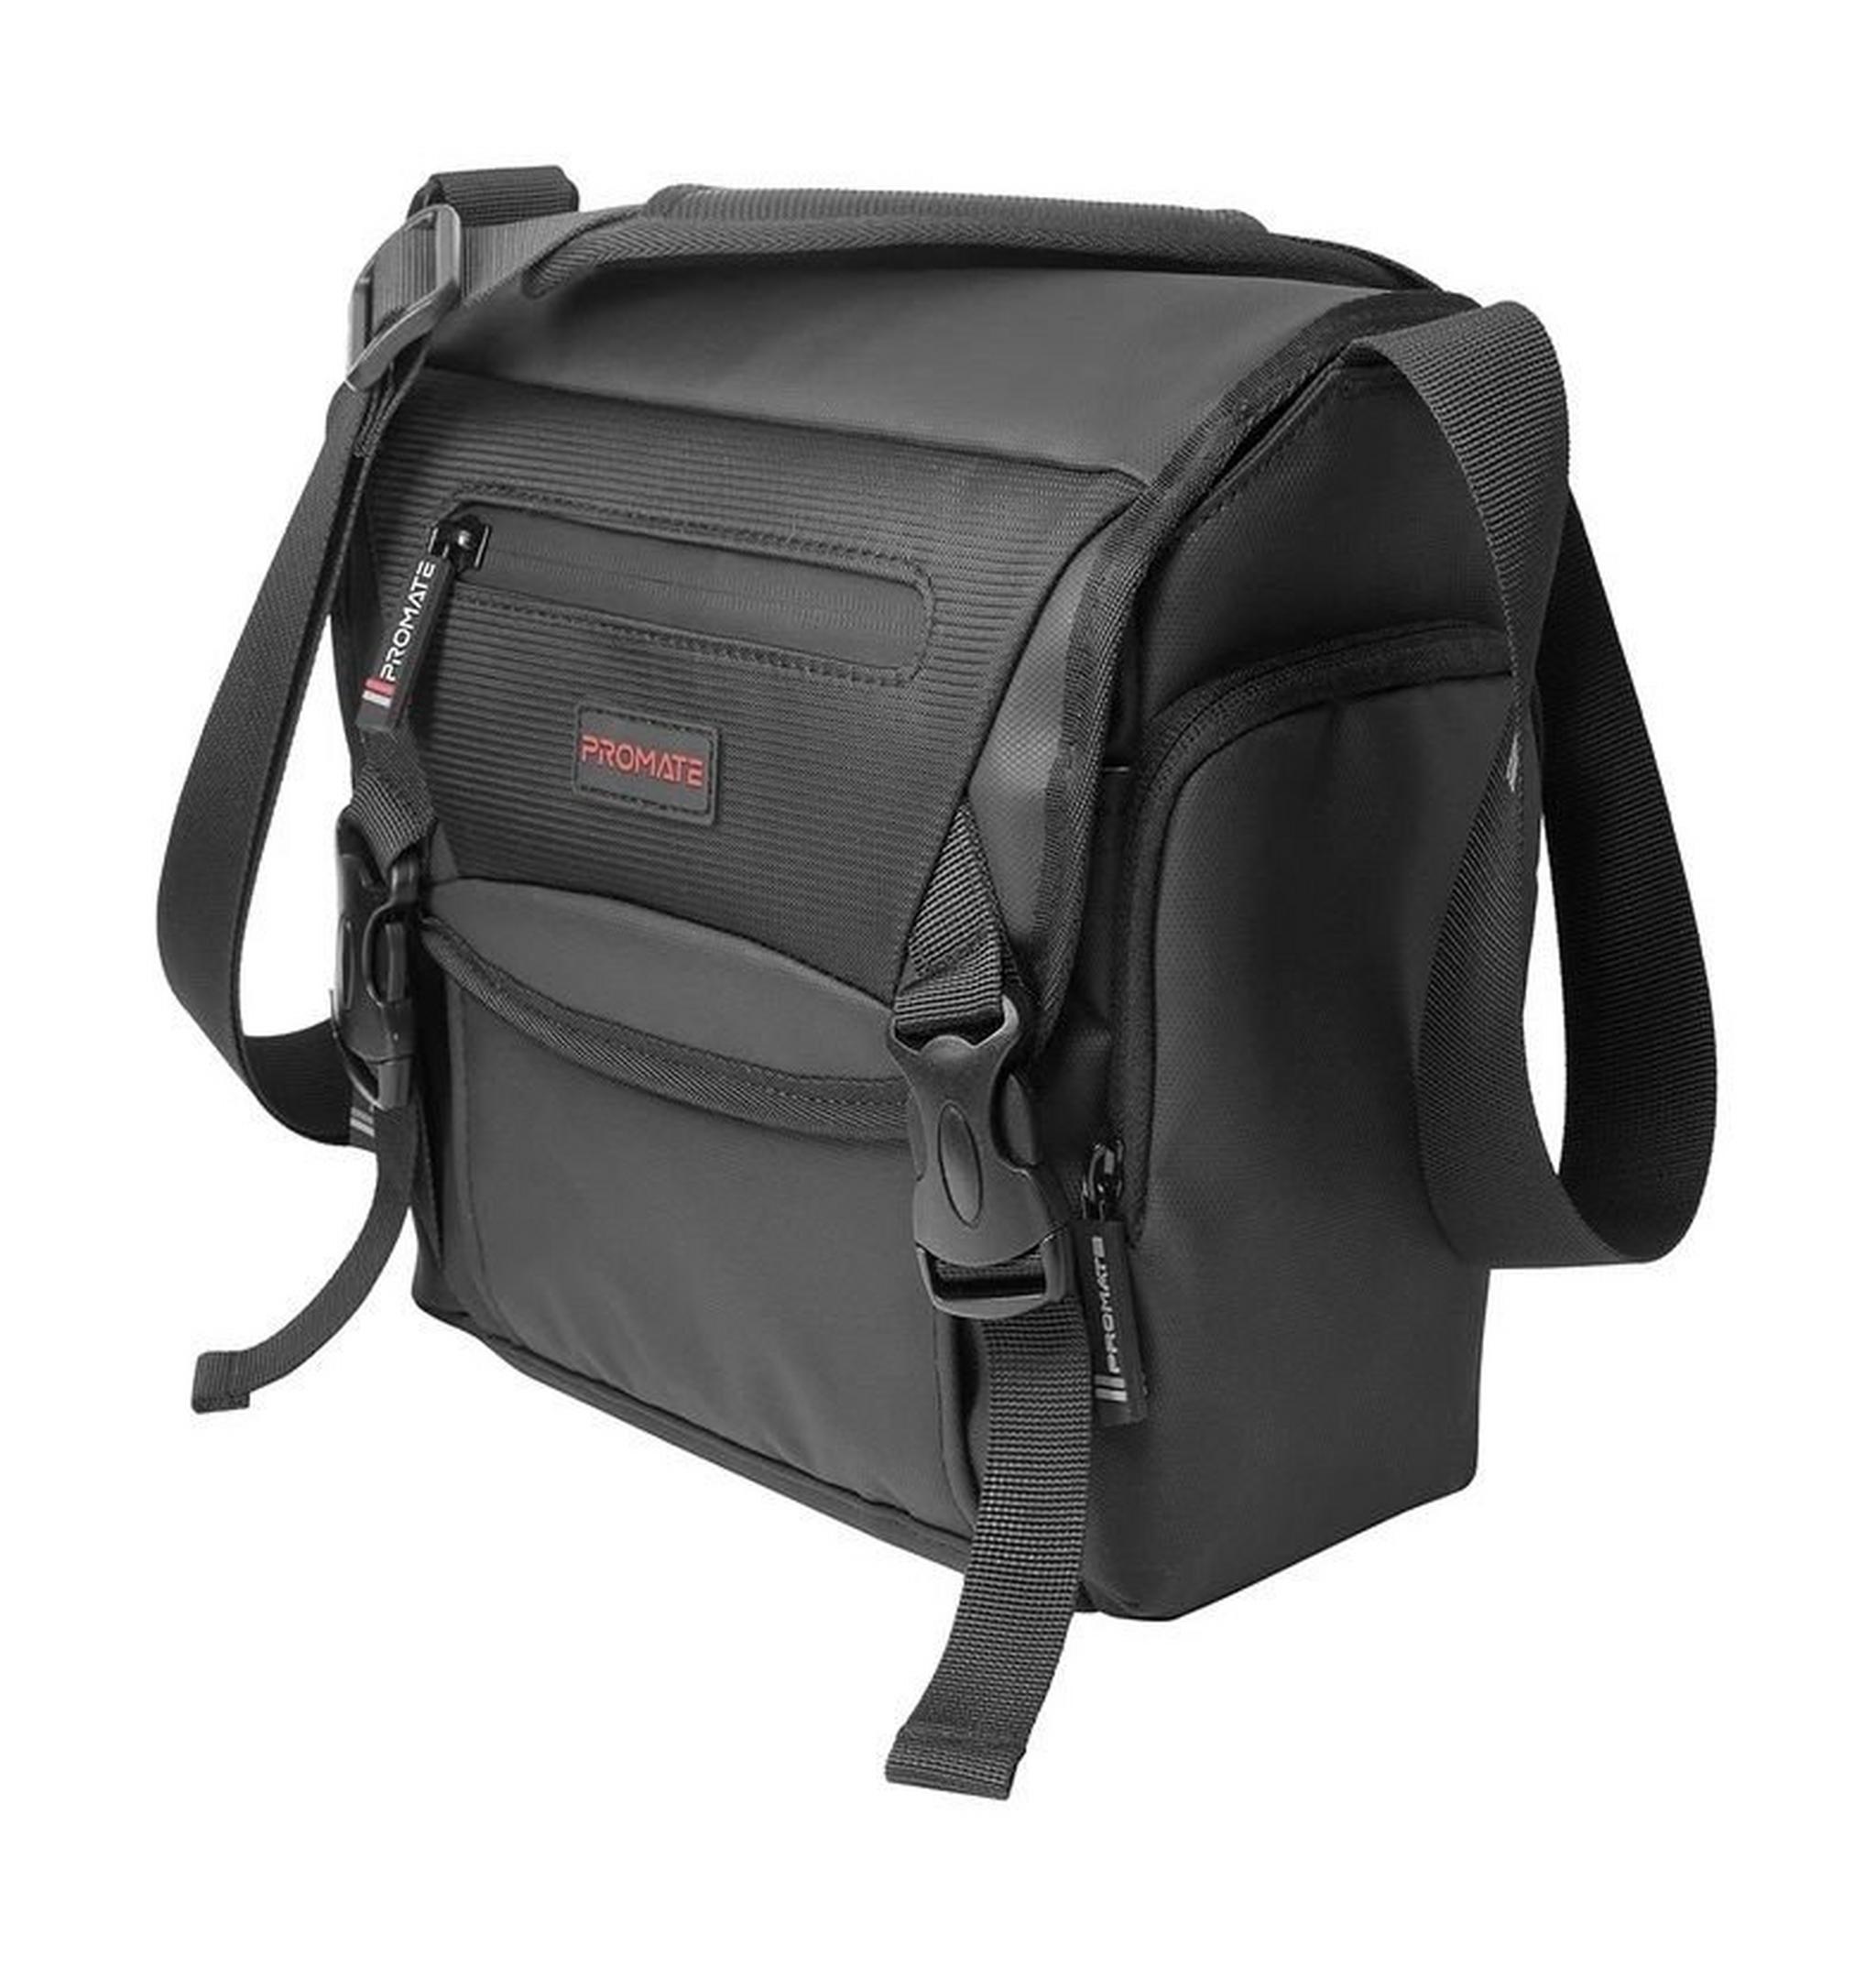 Promate Arco DSLR Shoulder Bag - Medium